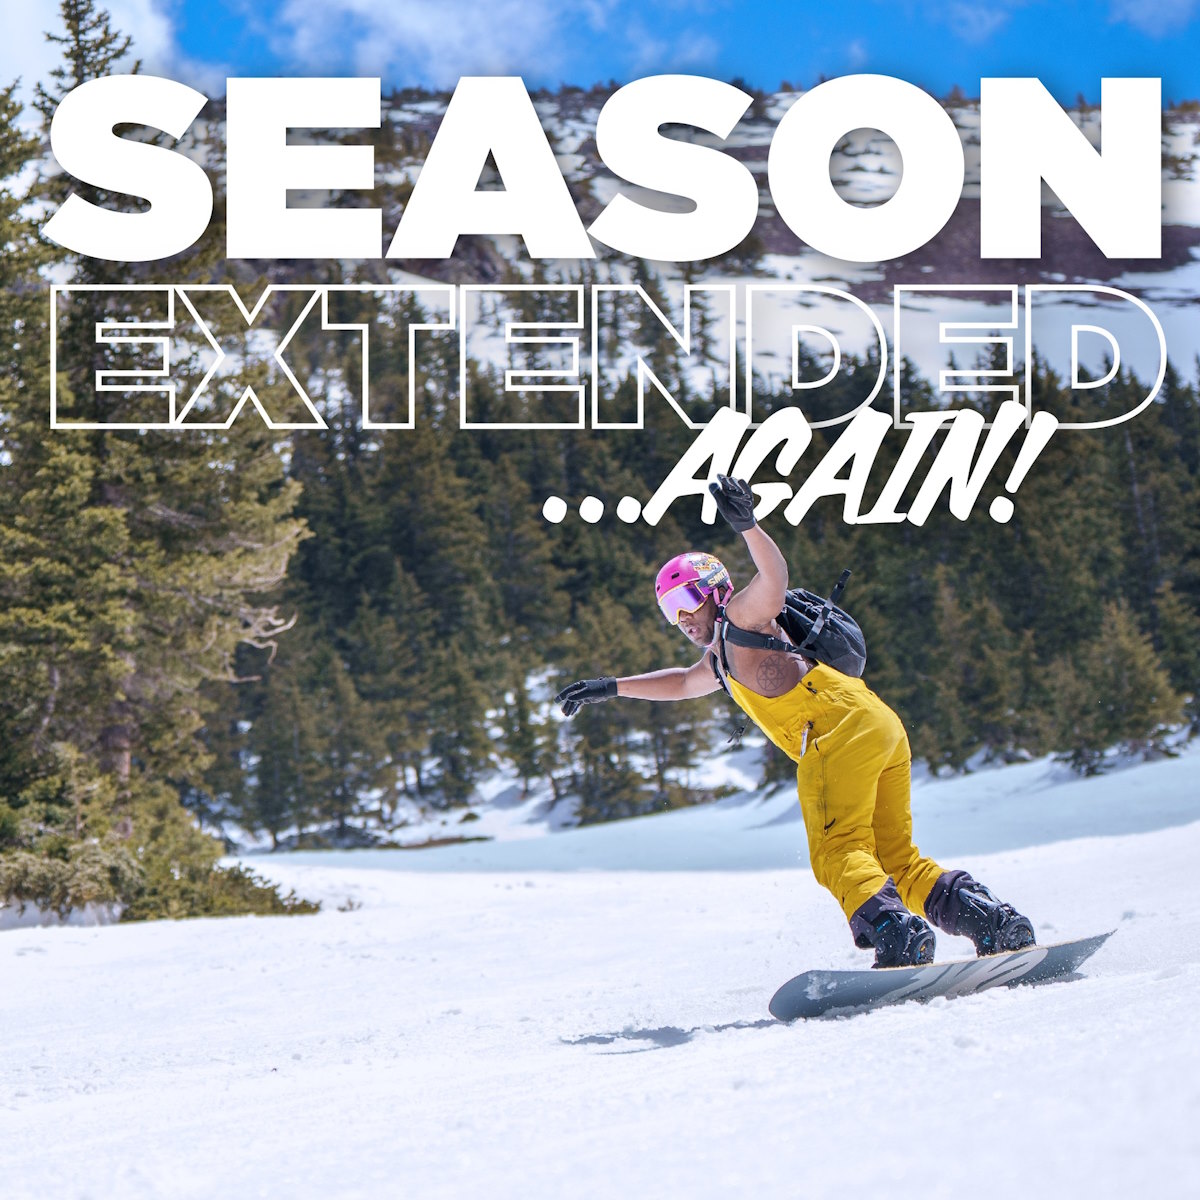 Arizona Snowbowl prolonga la temporada de esquí hasta el 27 de mayo, Día de los Caídos lugaresdenieve.com/?q=es/noticia/…